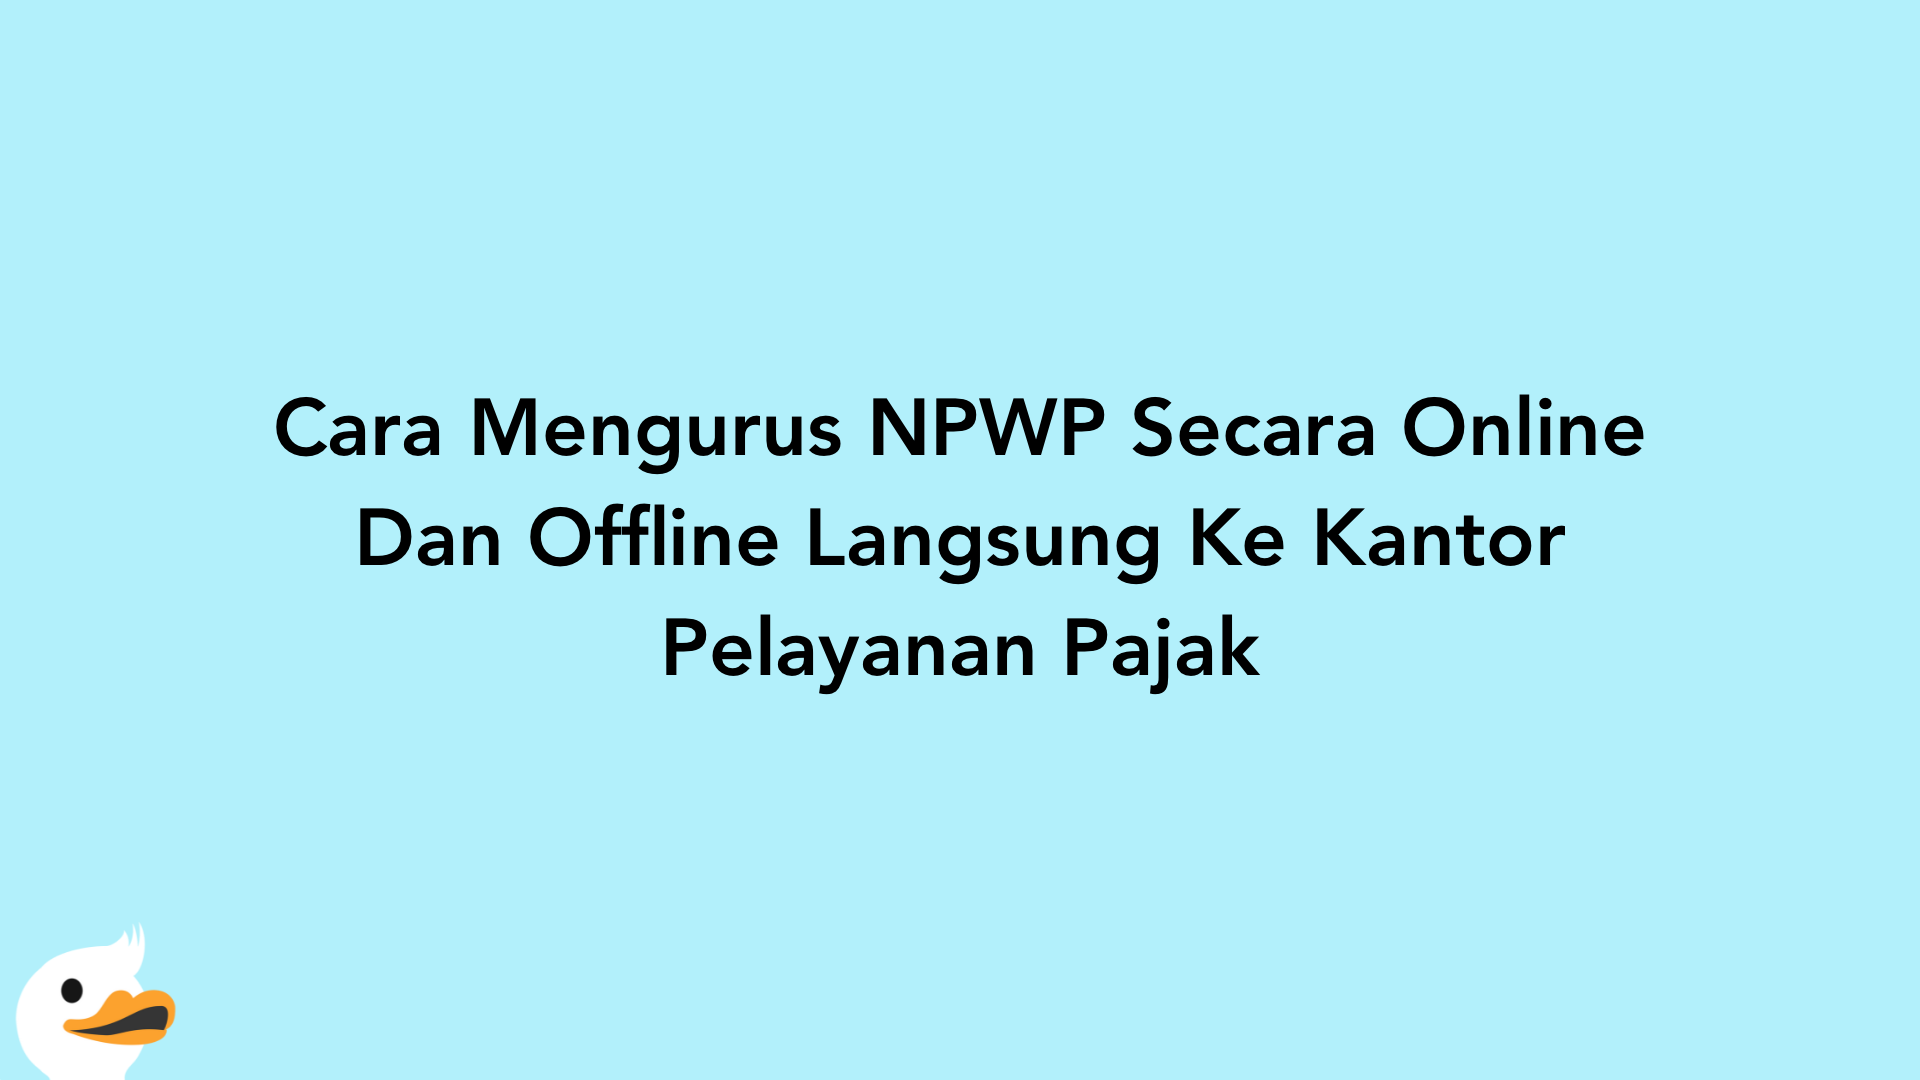 Cara Mengurus NPWP Secara Online Dan Offline Langsung Ke Kantor Pelayanan Pajak